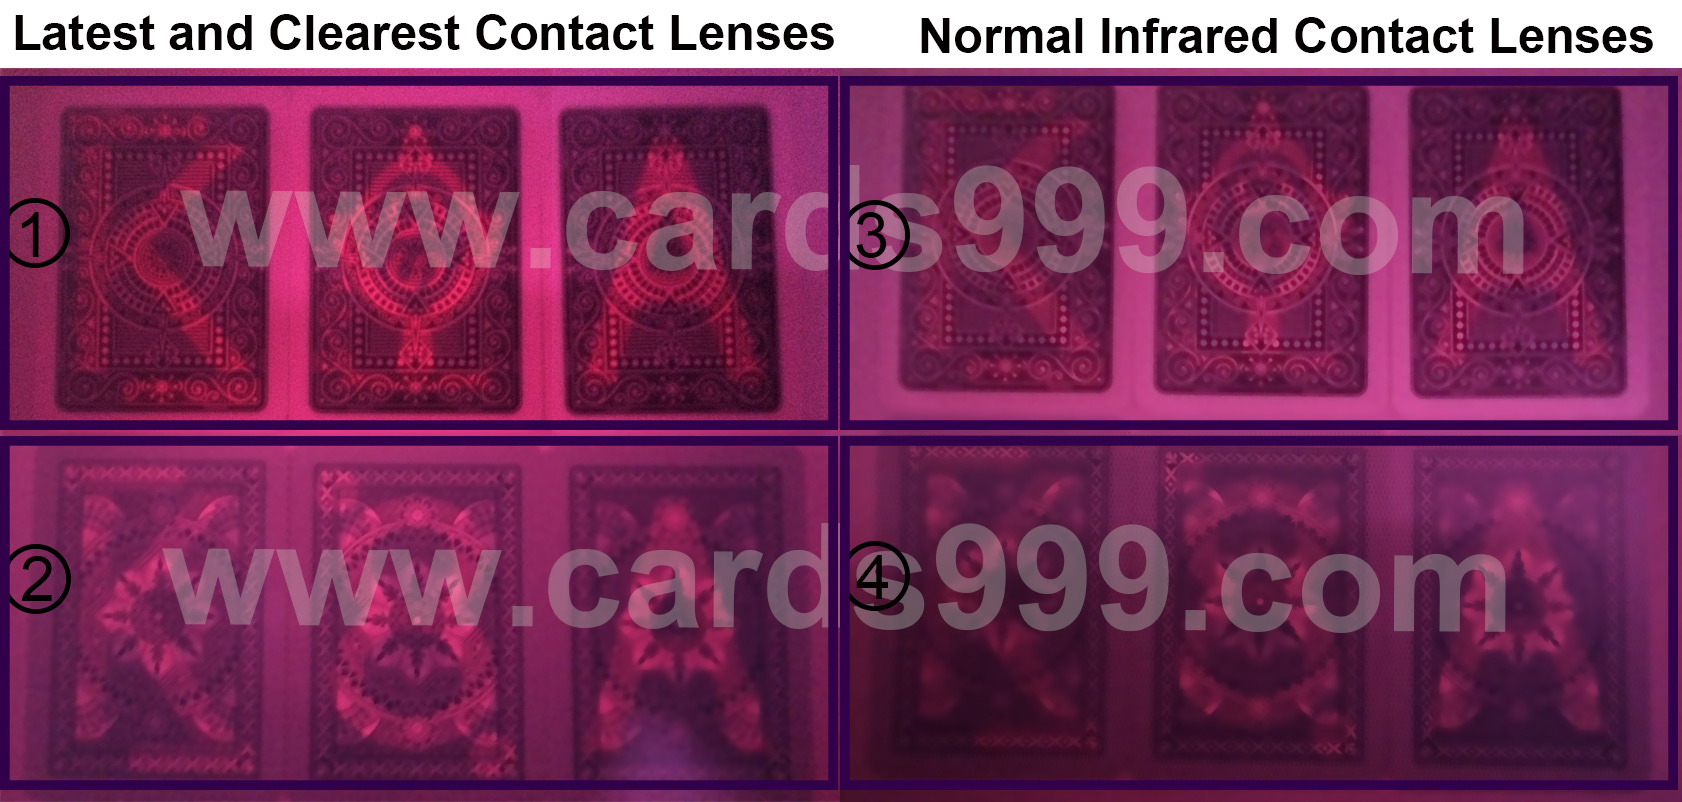  Neueste und klarsten Infrarot Kontaktlinsen